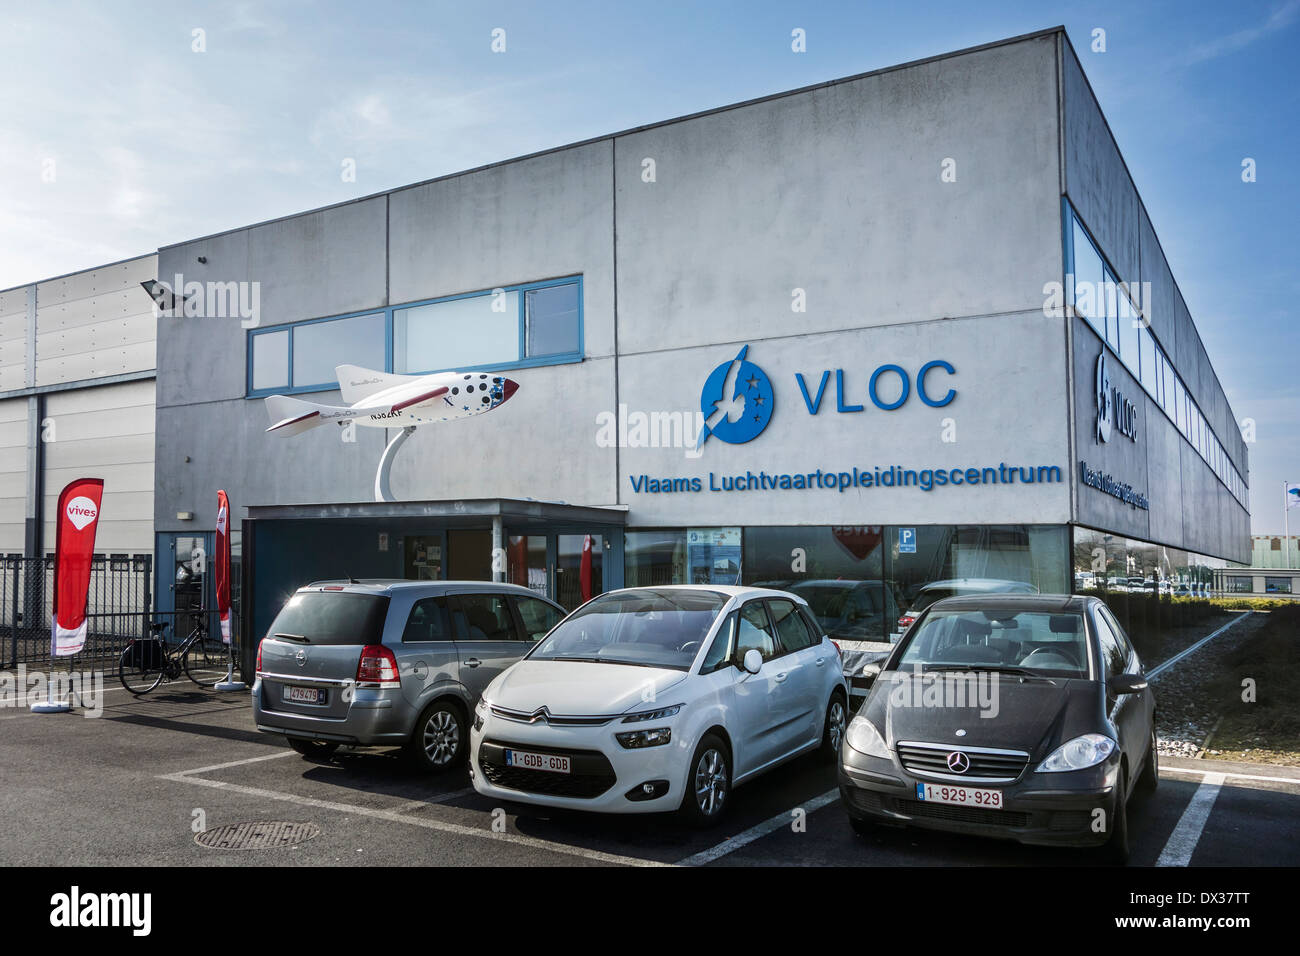 Vlaams Luchtvaartopleidingscentrum VLOC / / centre de formation aéronautique flamande à Ostende, Belgique Banque D'Images